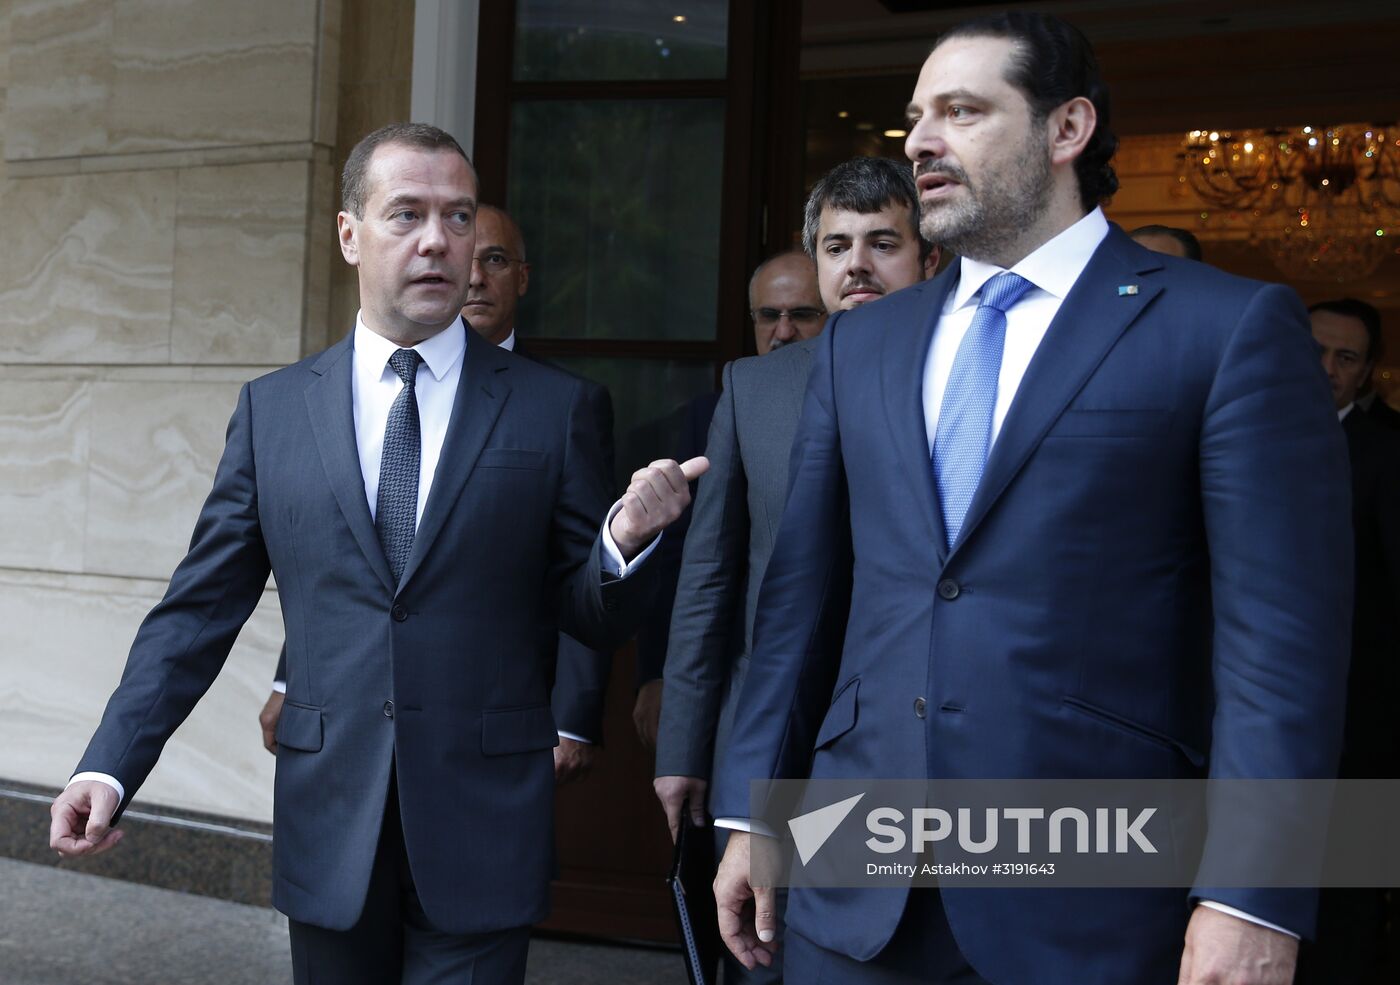 Prime Minister Dmitry Medvedev meets with Lebanese Prime Minister Saad Hariri